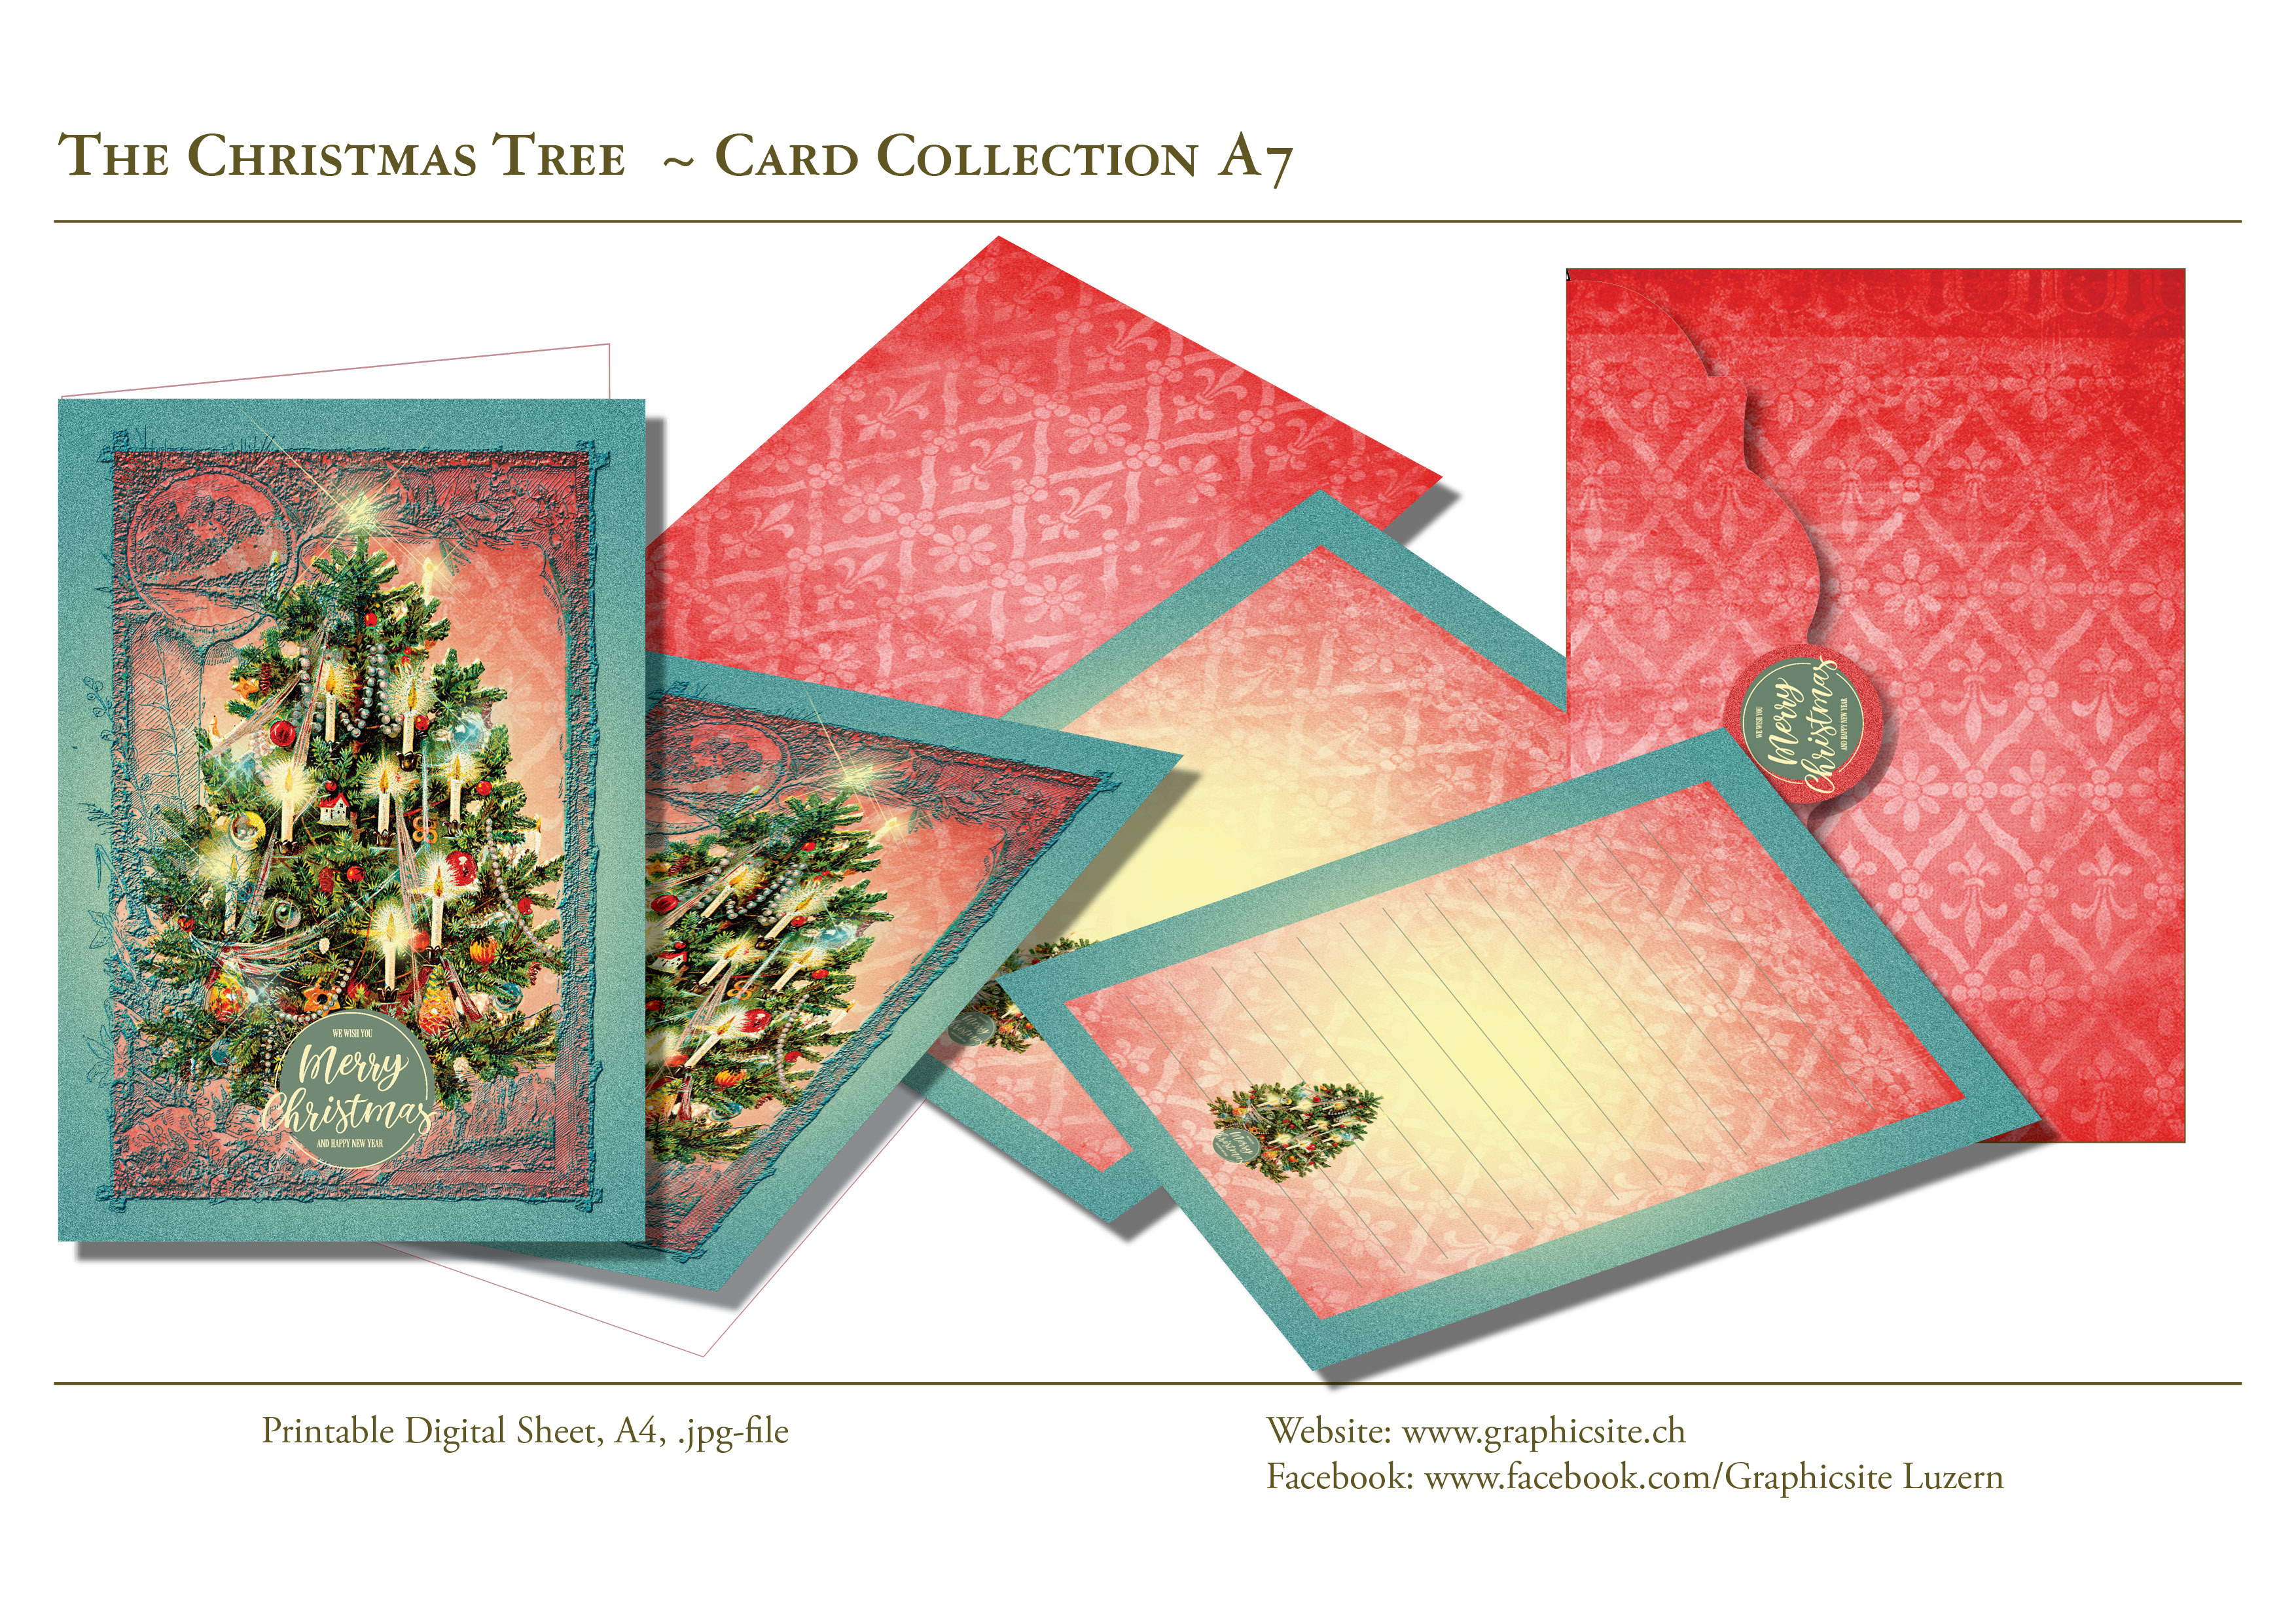 Karten selber drucken - Weihnachtskarten, Grusskarten, Blau, Weiss,  -  Kuvert - #christbaum, #weihnachtsbaum, #weihnachtskarten, #karten, #selber, #drucken, #gestalten, #grusskarten, #A7,  #basteln, #luzern, #schweiz